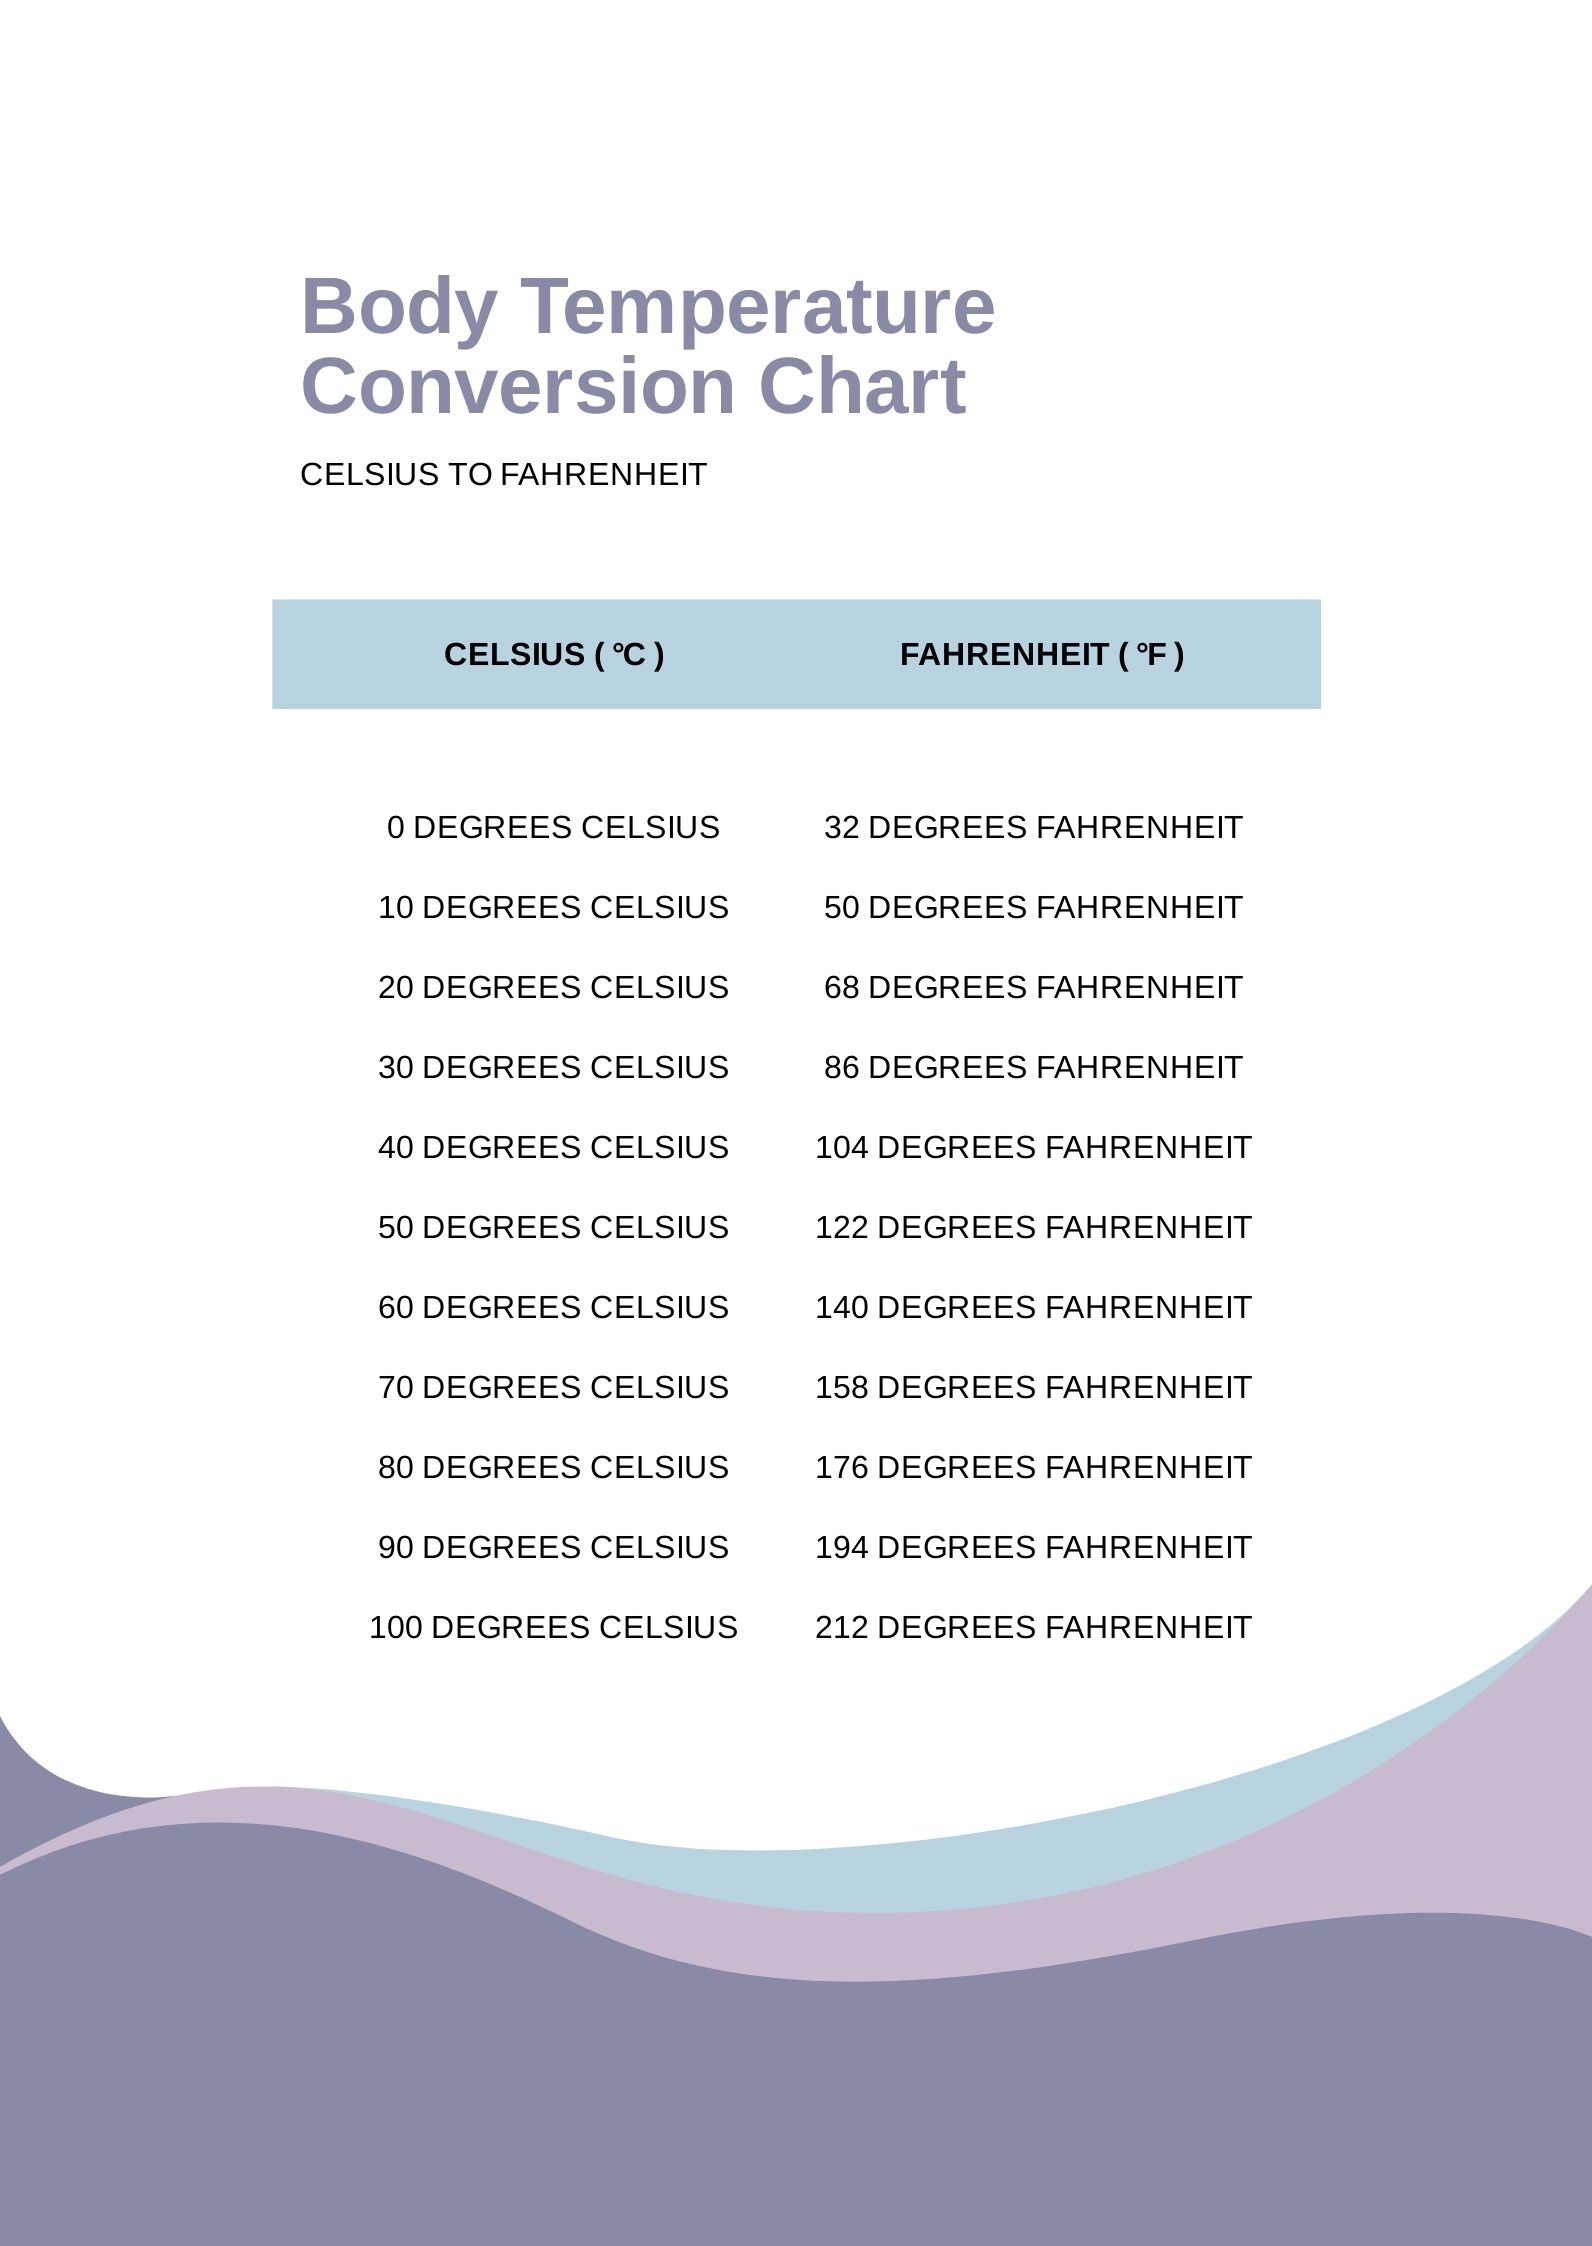 Body Temperature Conversion Chart in PDF